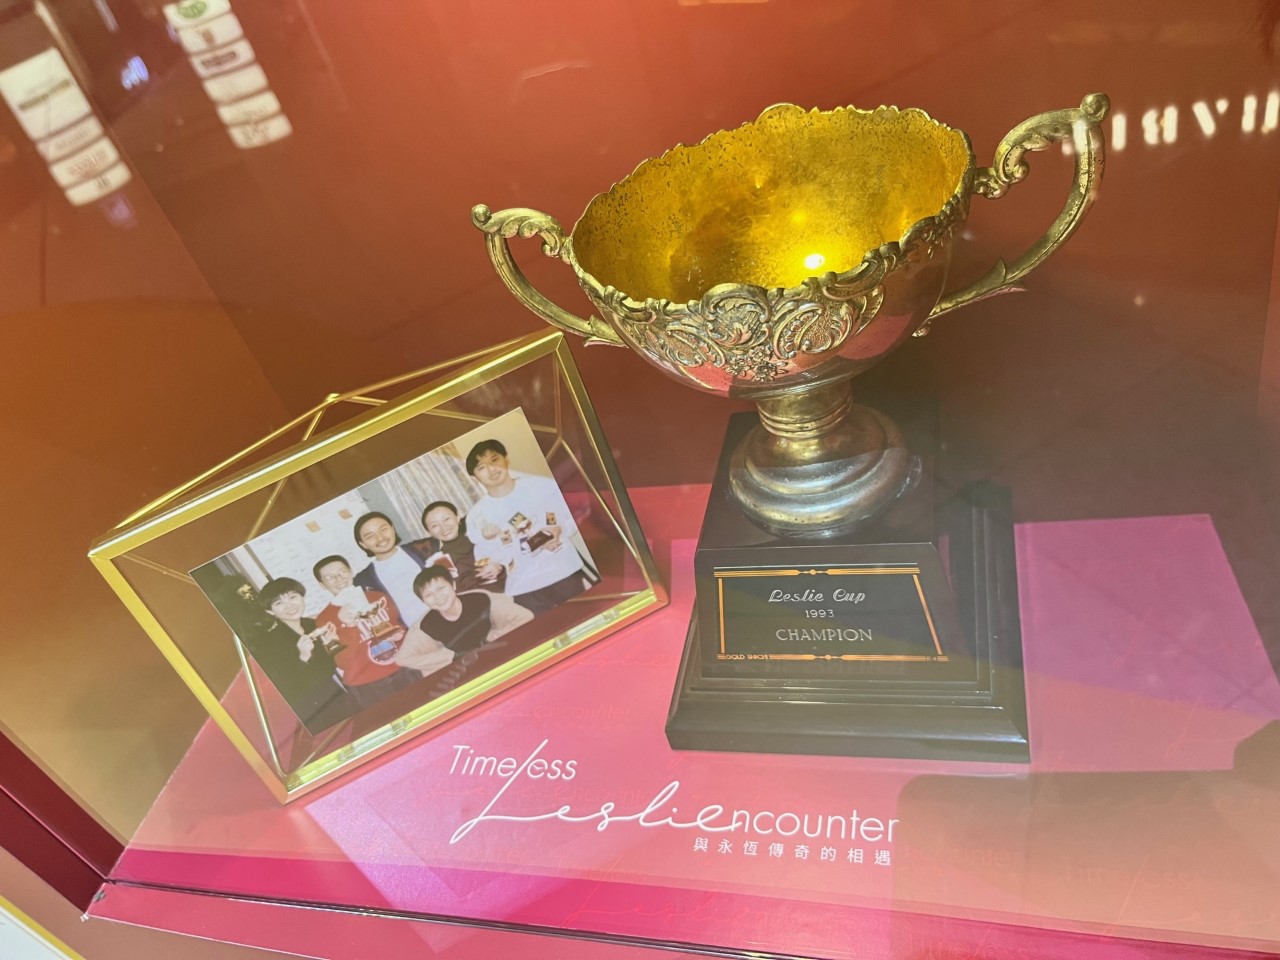 由於「哥哥」非常喜愛打麻雀，當年他曾與好友舉辨「Leslie Cup 國榮盃」，由蘇施黃奪得冠軍，贏得此盃。現時獎盃在奧海城的紀念展展出。 